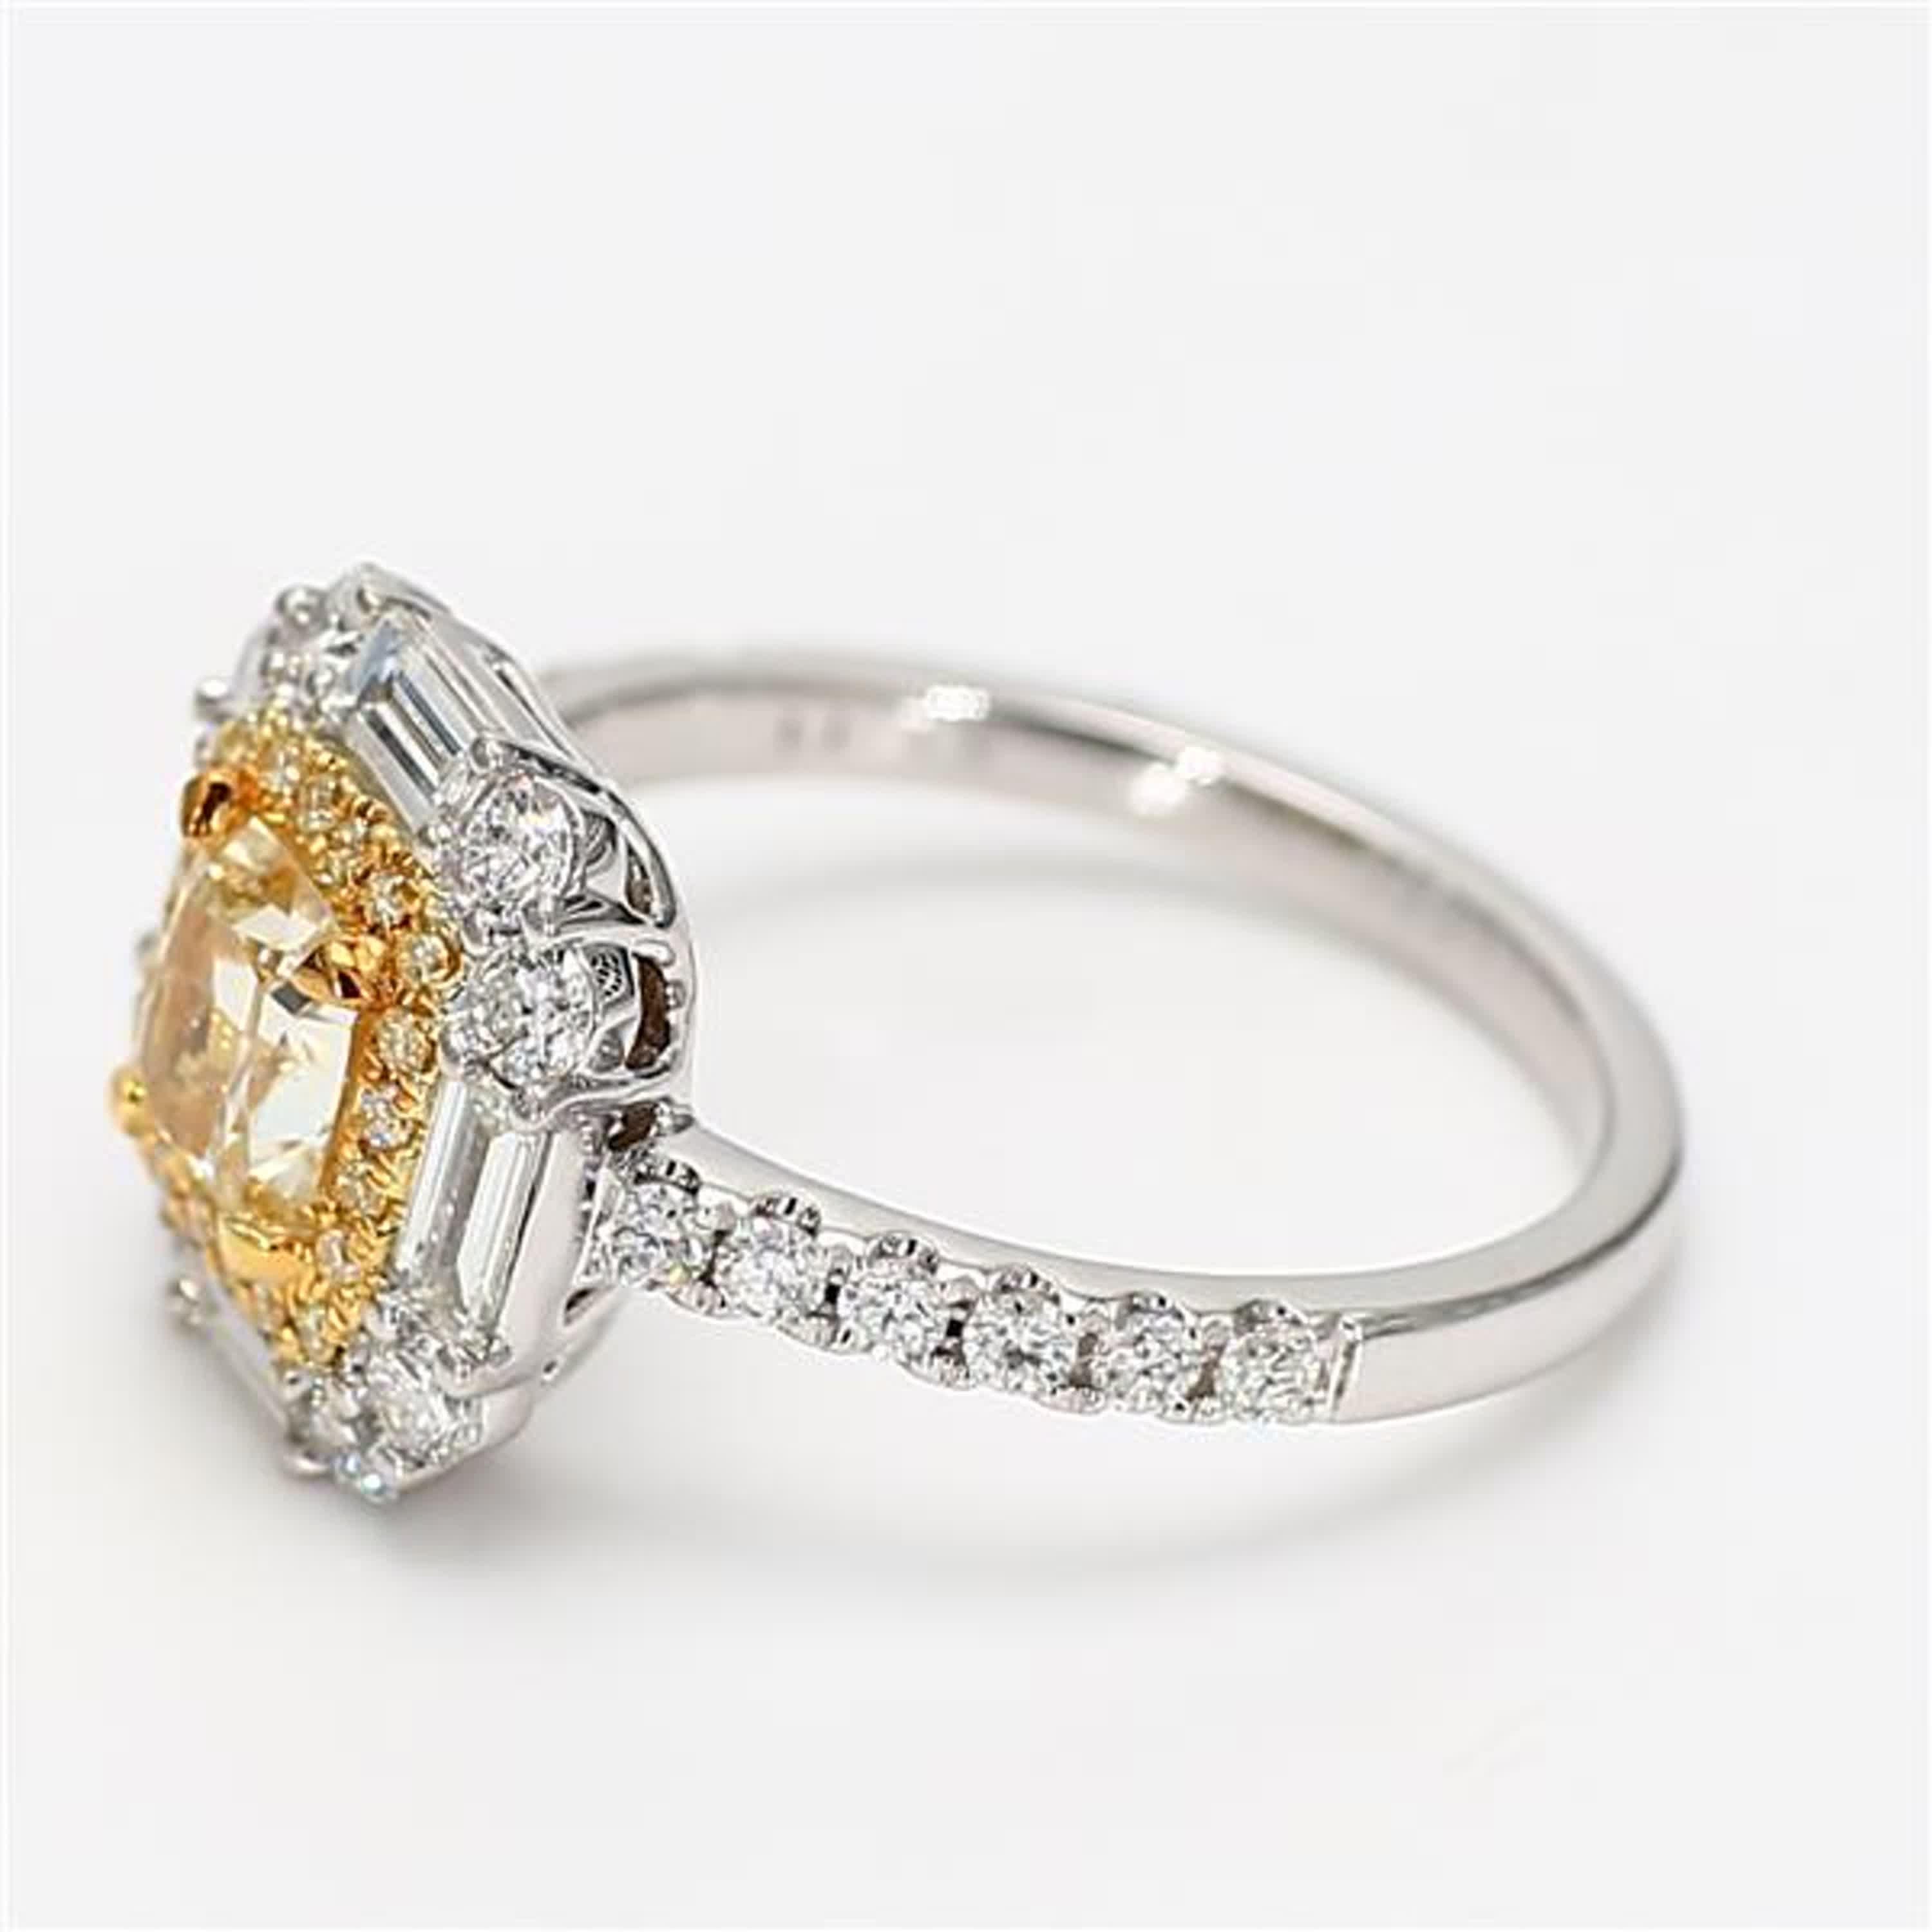 2ct yellow diamond ring